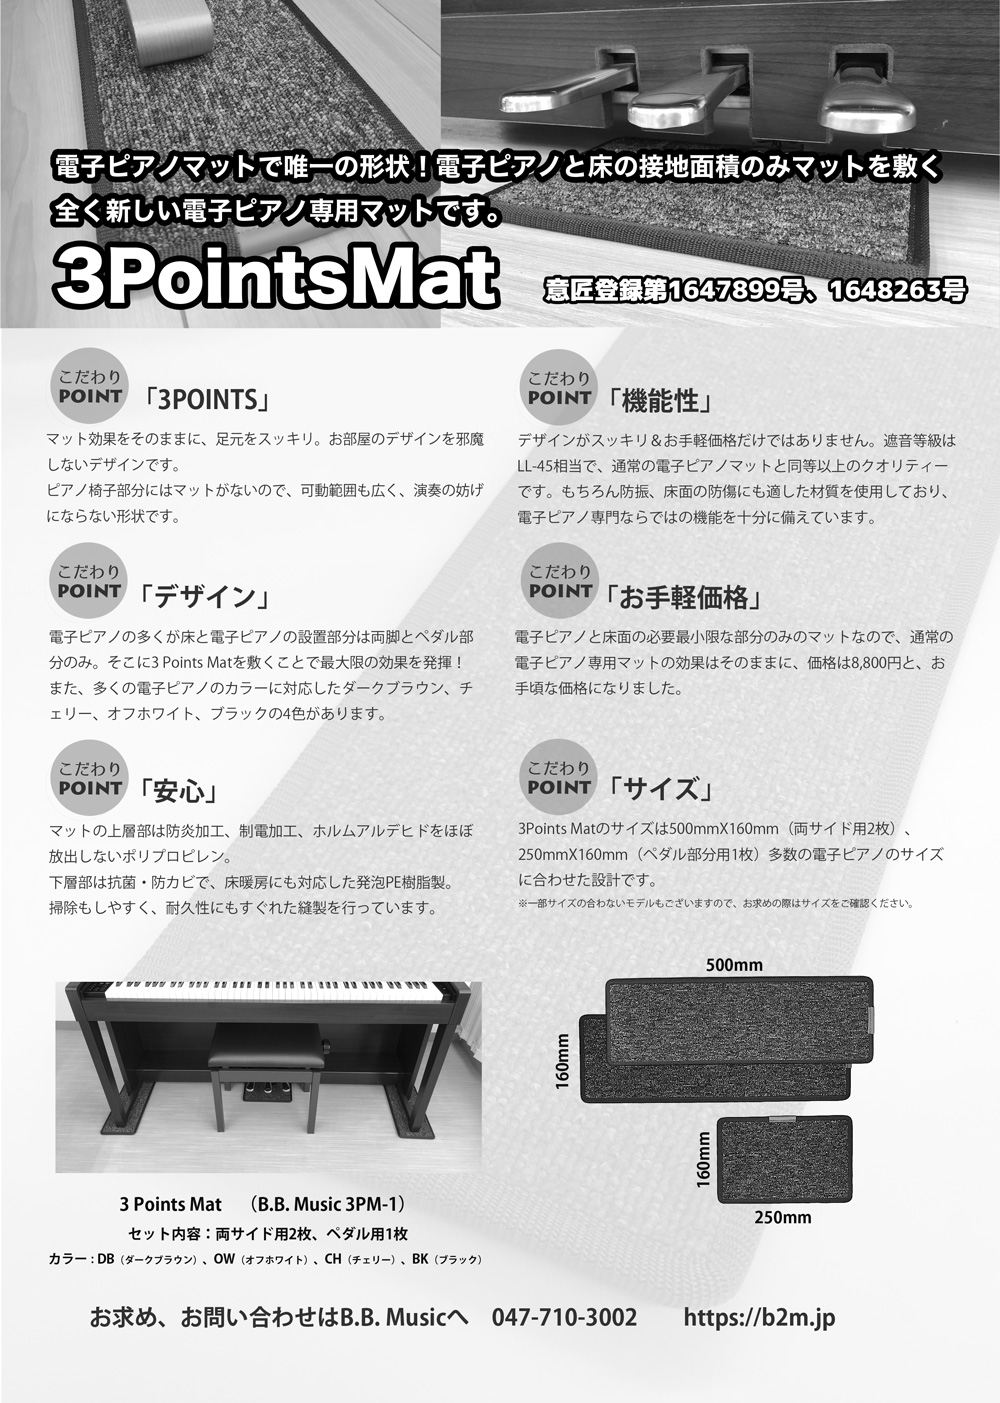 3 Points Mat （3ポイントマット）電子ピアノ マット | 防音・防振・防傷 ピアノマット カーペット ヤマハ ローランド カワイ カシオ  コルグ などに対応 :3pm-1:B.B.Music Yahoo!ショップ - 通販 - Yahoo!ショッピング